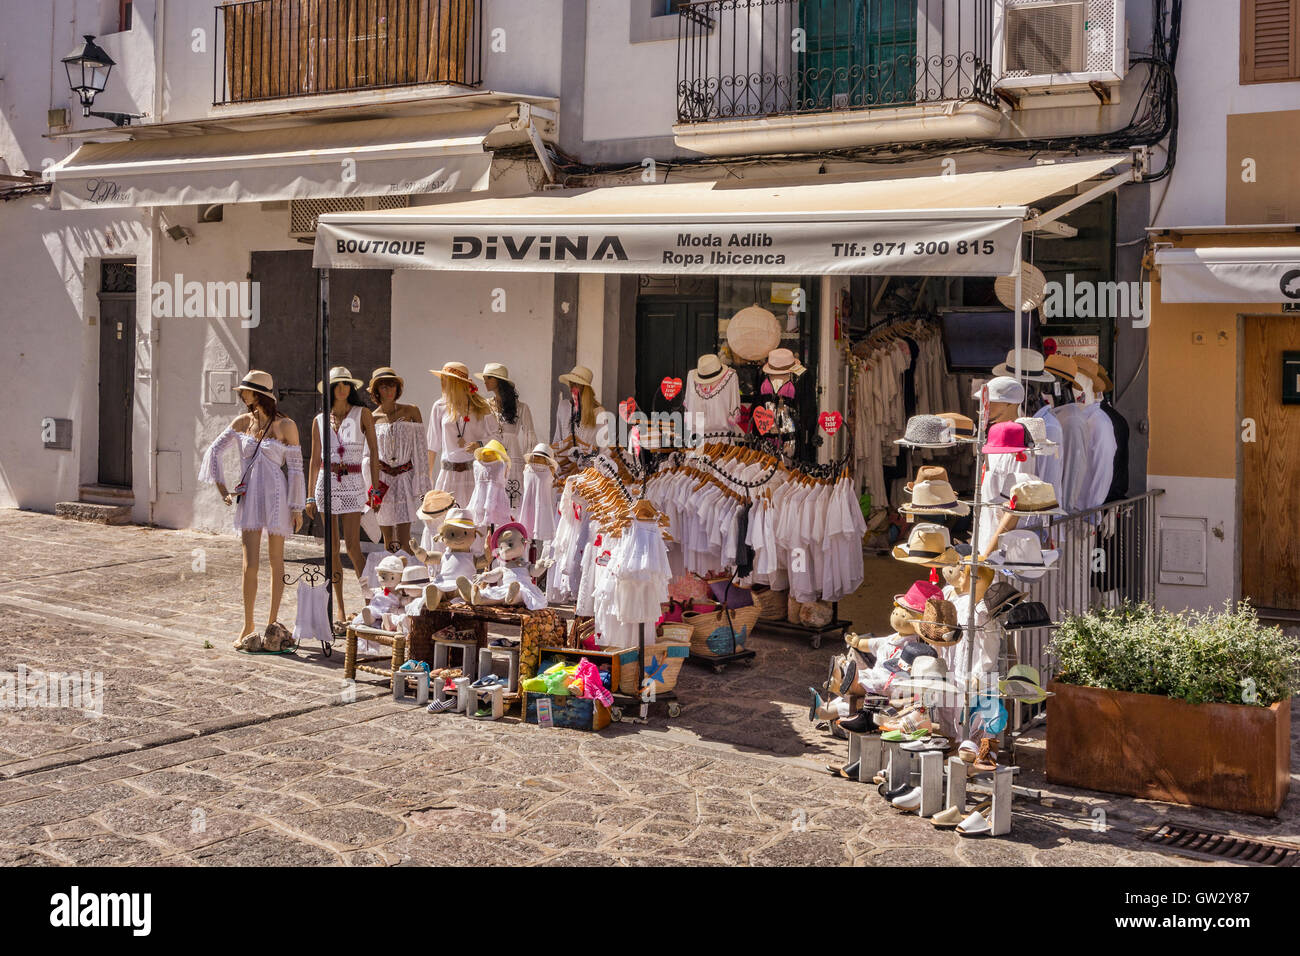 Divina boutique, vente de vêtements pour enfants et femmes, dans la vieille ville d'Ibiza, Ibiza, Espagne. Banque D'Images